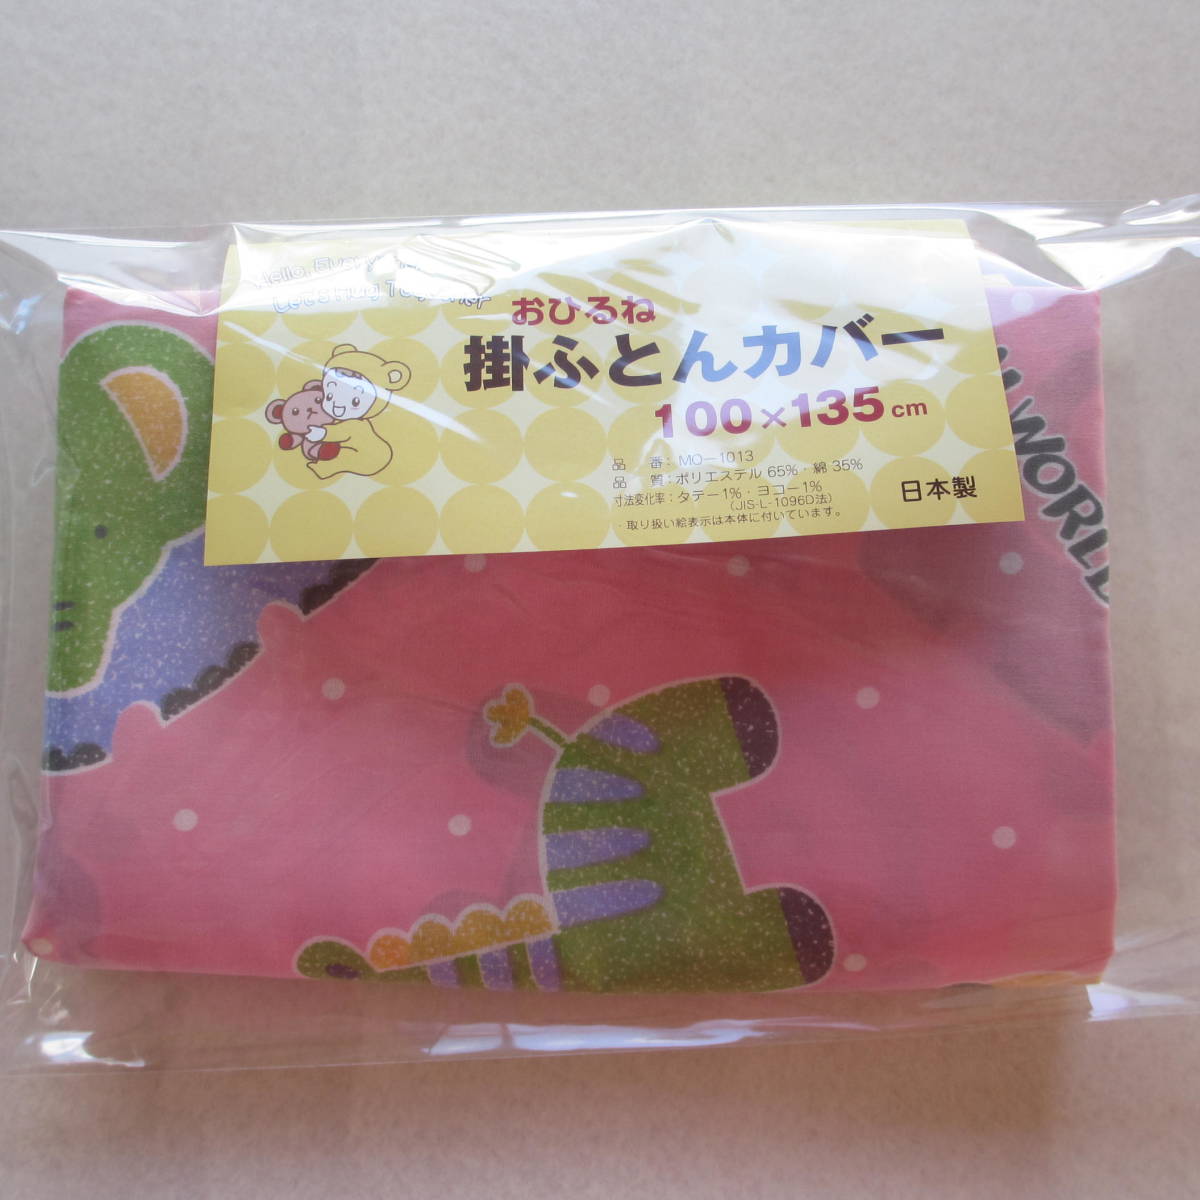  не использовался * детский животное узор * вздремнуть . futon покрытие предметы домашнего обихода * детский товар * постельные принадлежности ( сделано в Японии )( Mikawa волокно )